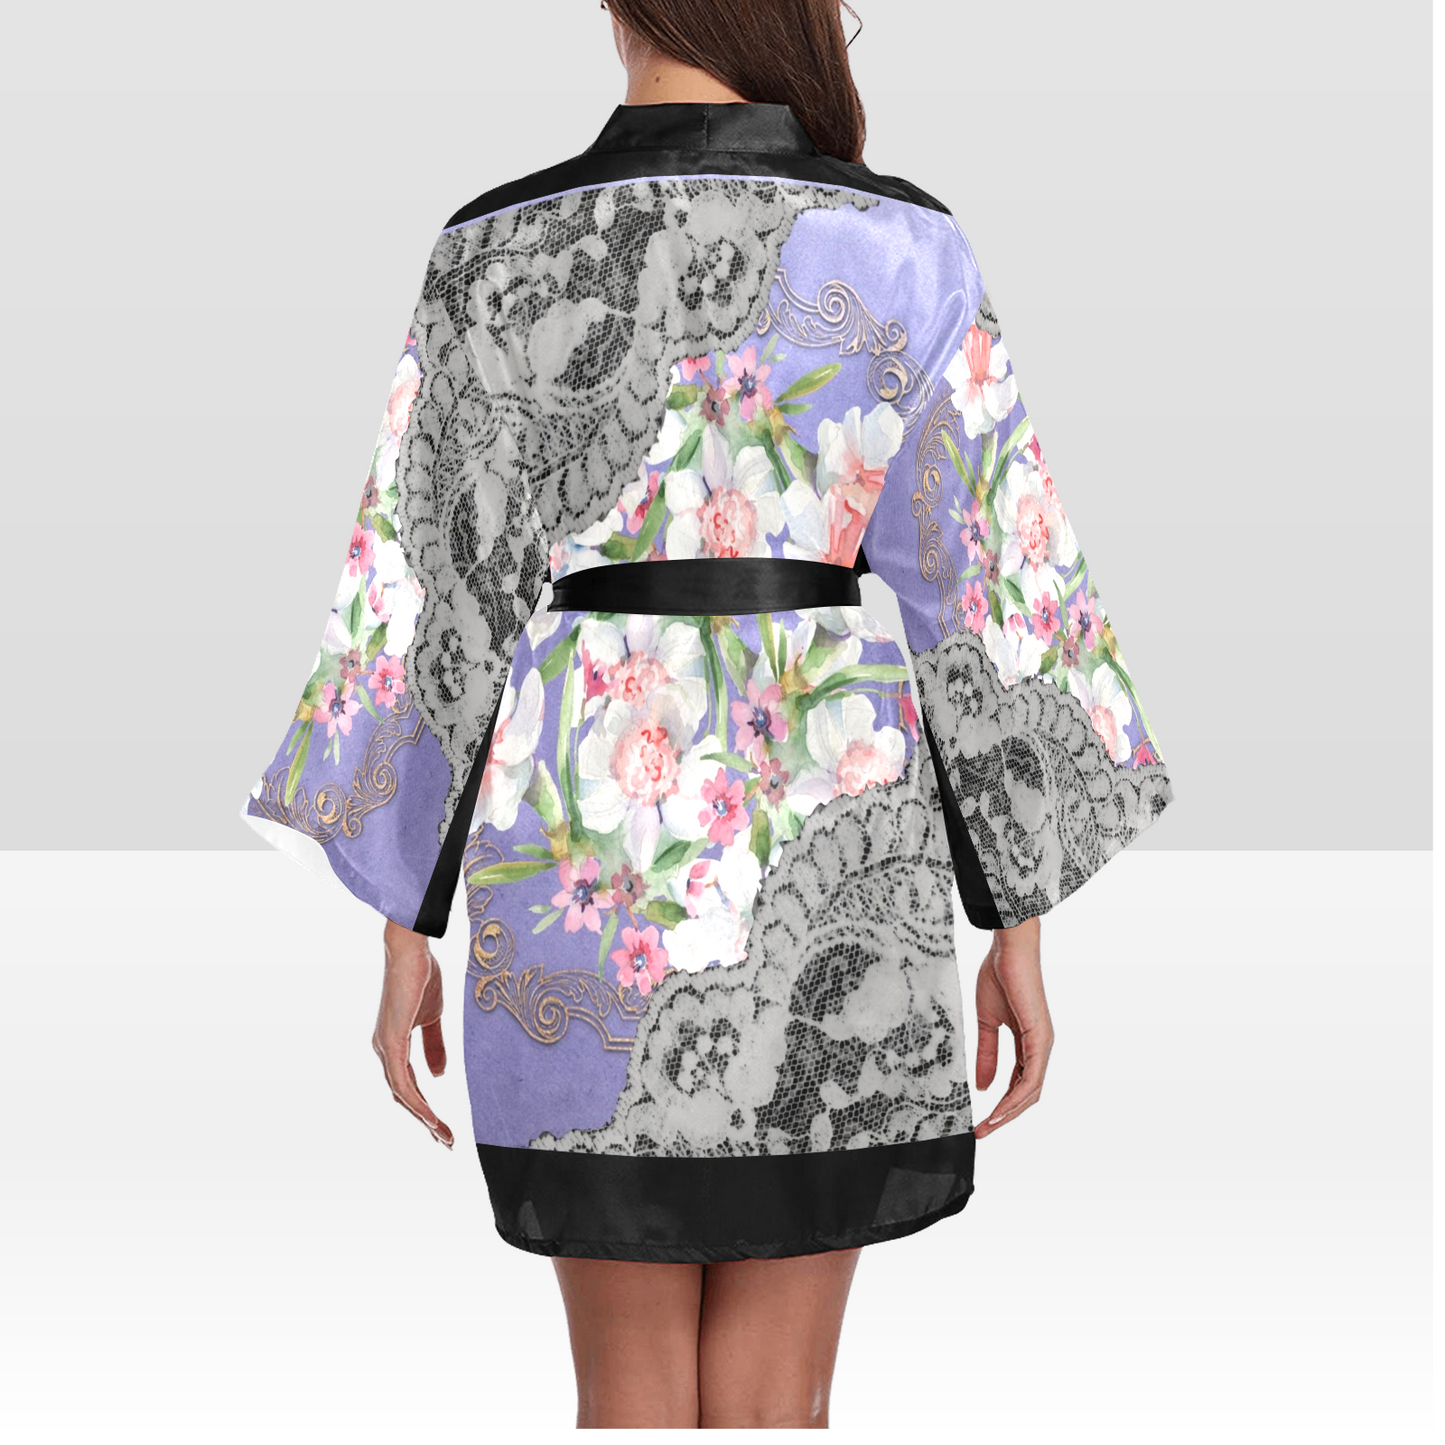 Victorian Lace Kimono Robe, Black or White Trim, Sizes XS to 2XL, Design 45